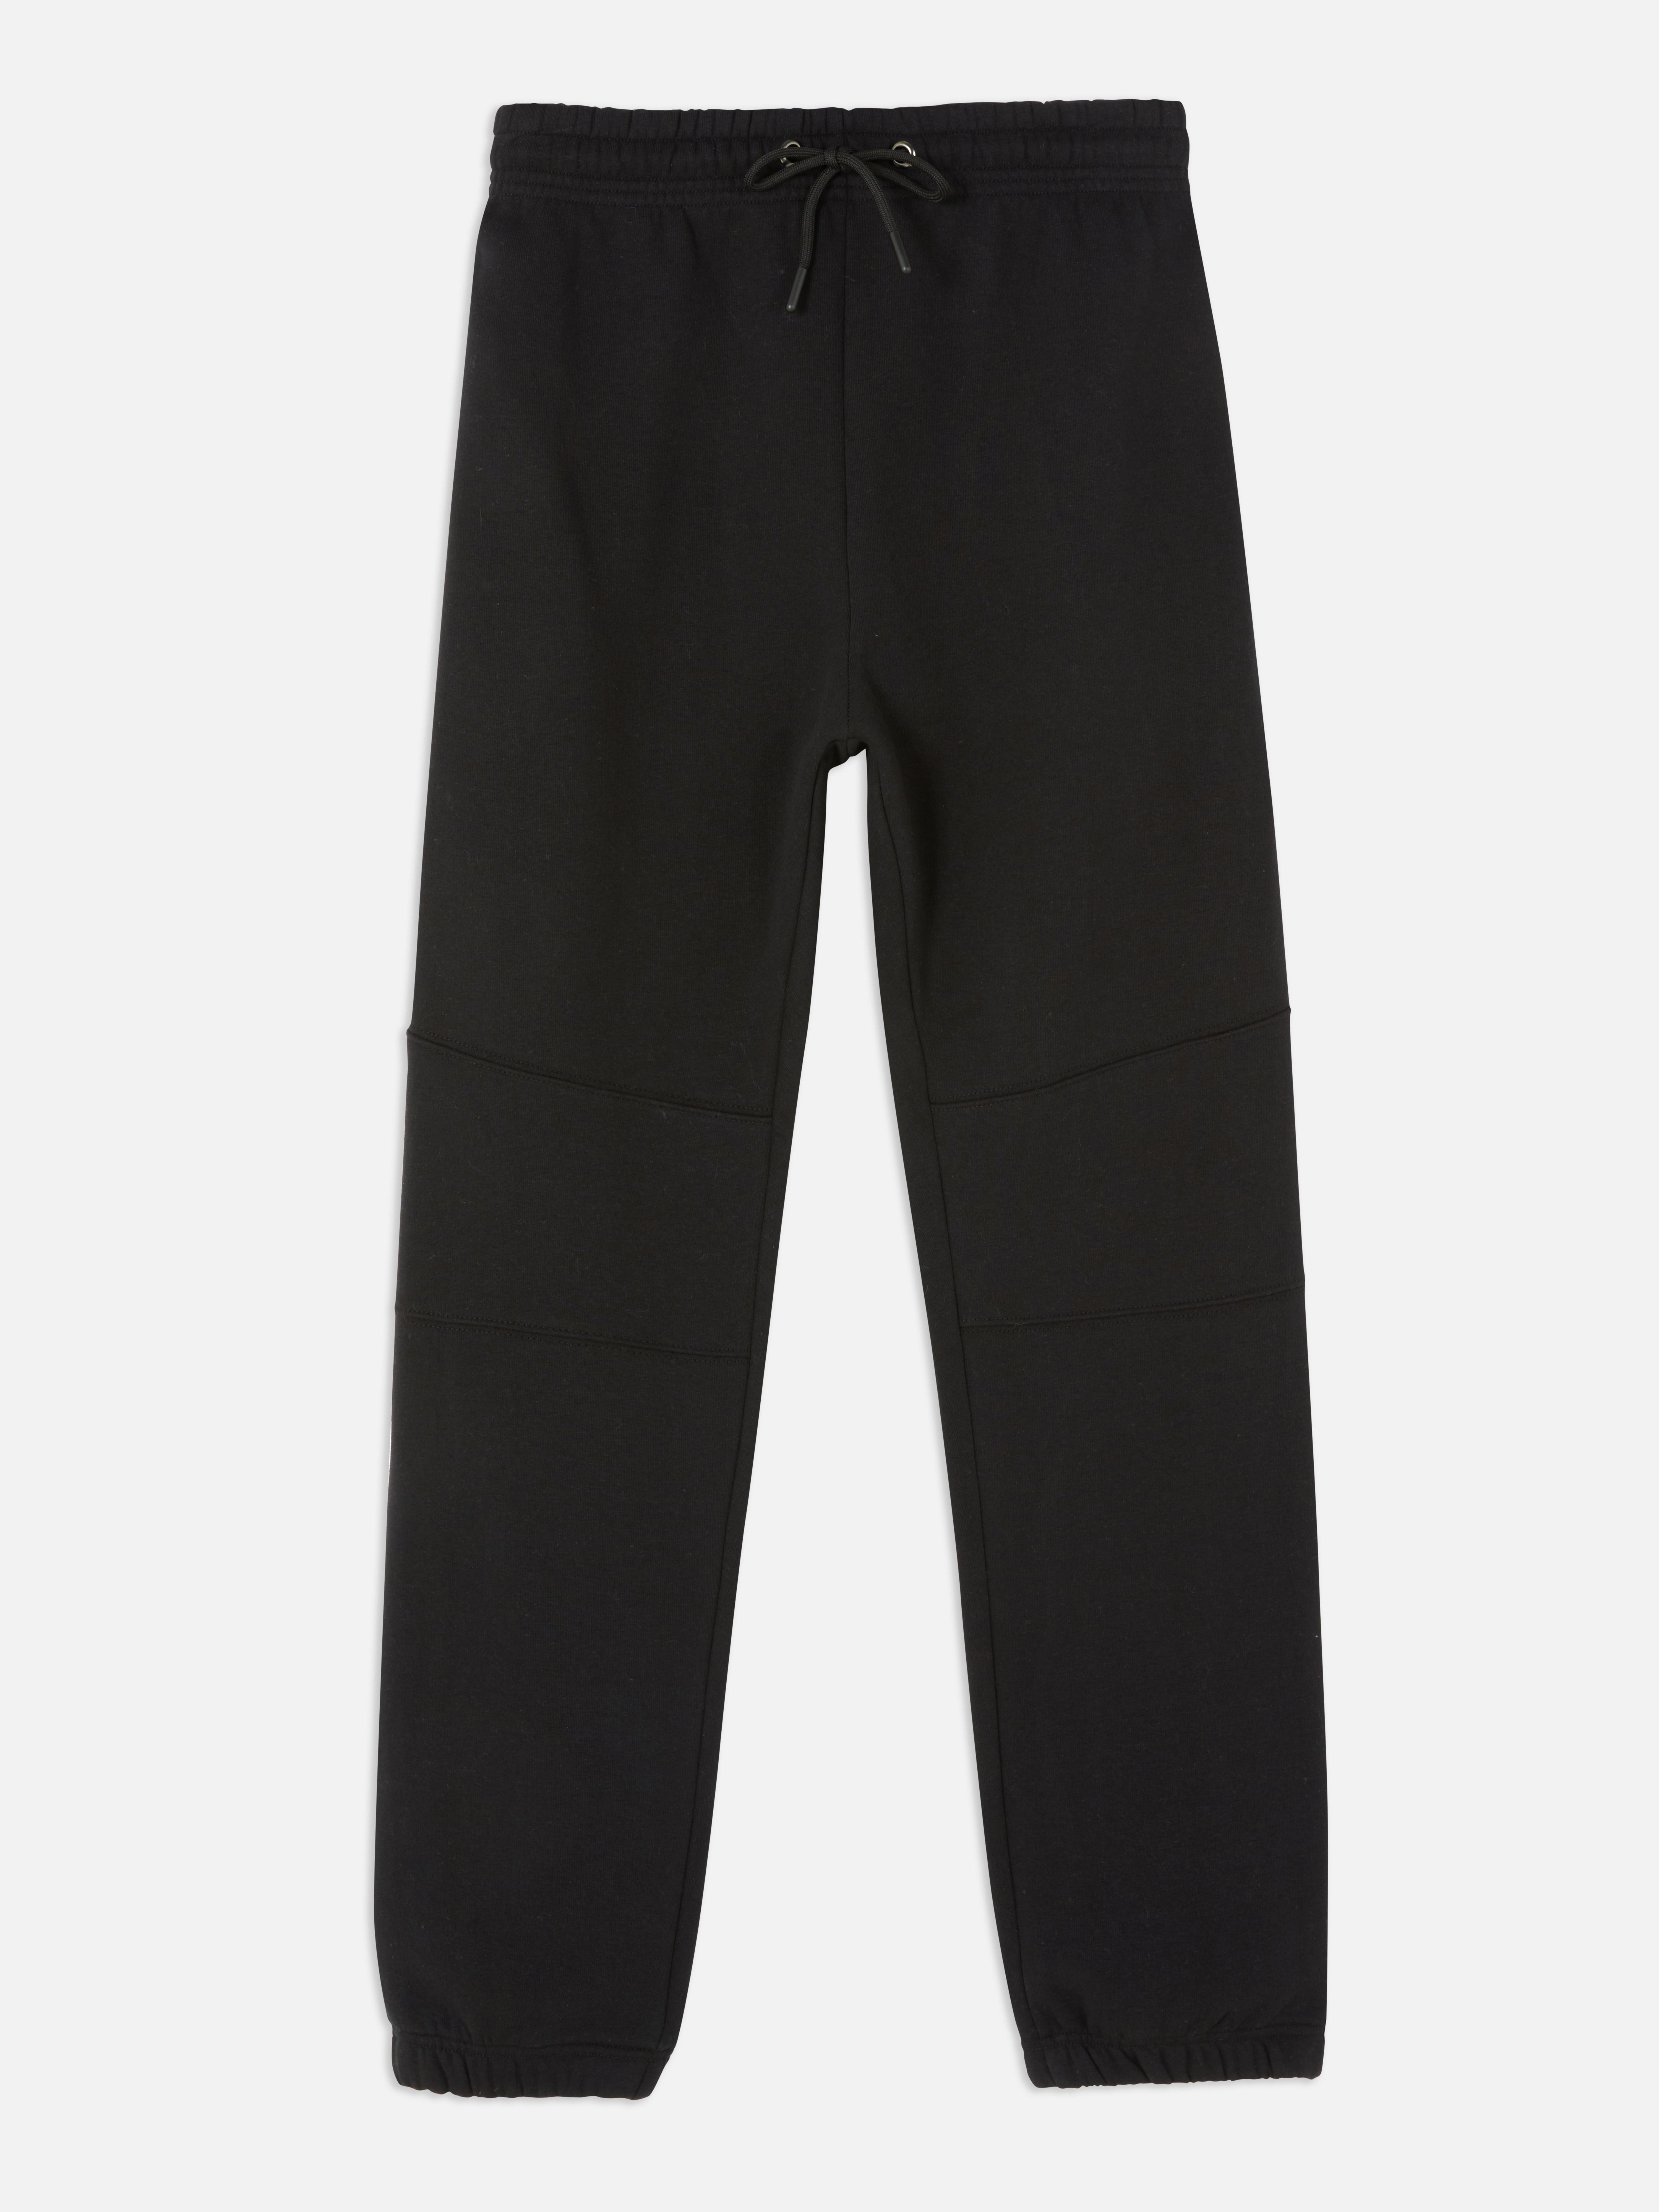 Pantalón chándal entallado sencillo | Pantalones de chándal para hombre | Ropa para hombre | Nuestra línea de moda masculina | Todos los productos Primark | Primark